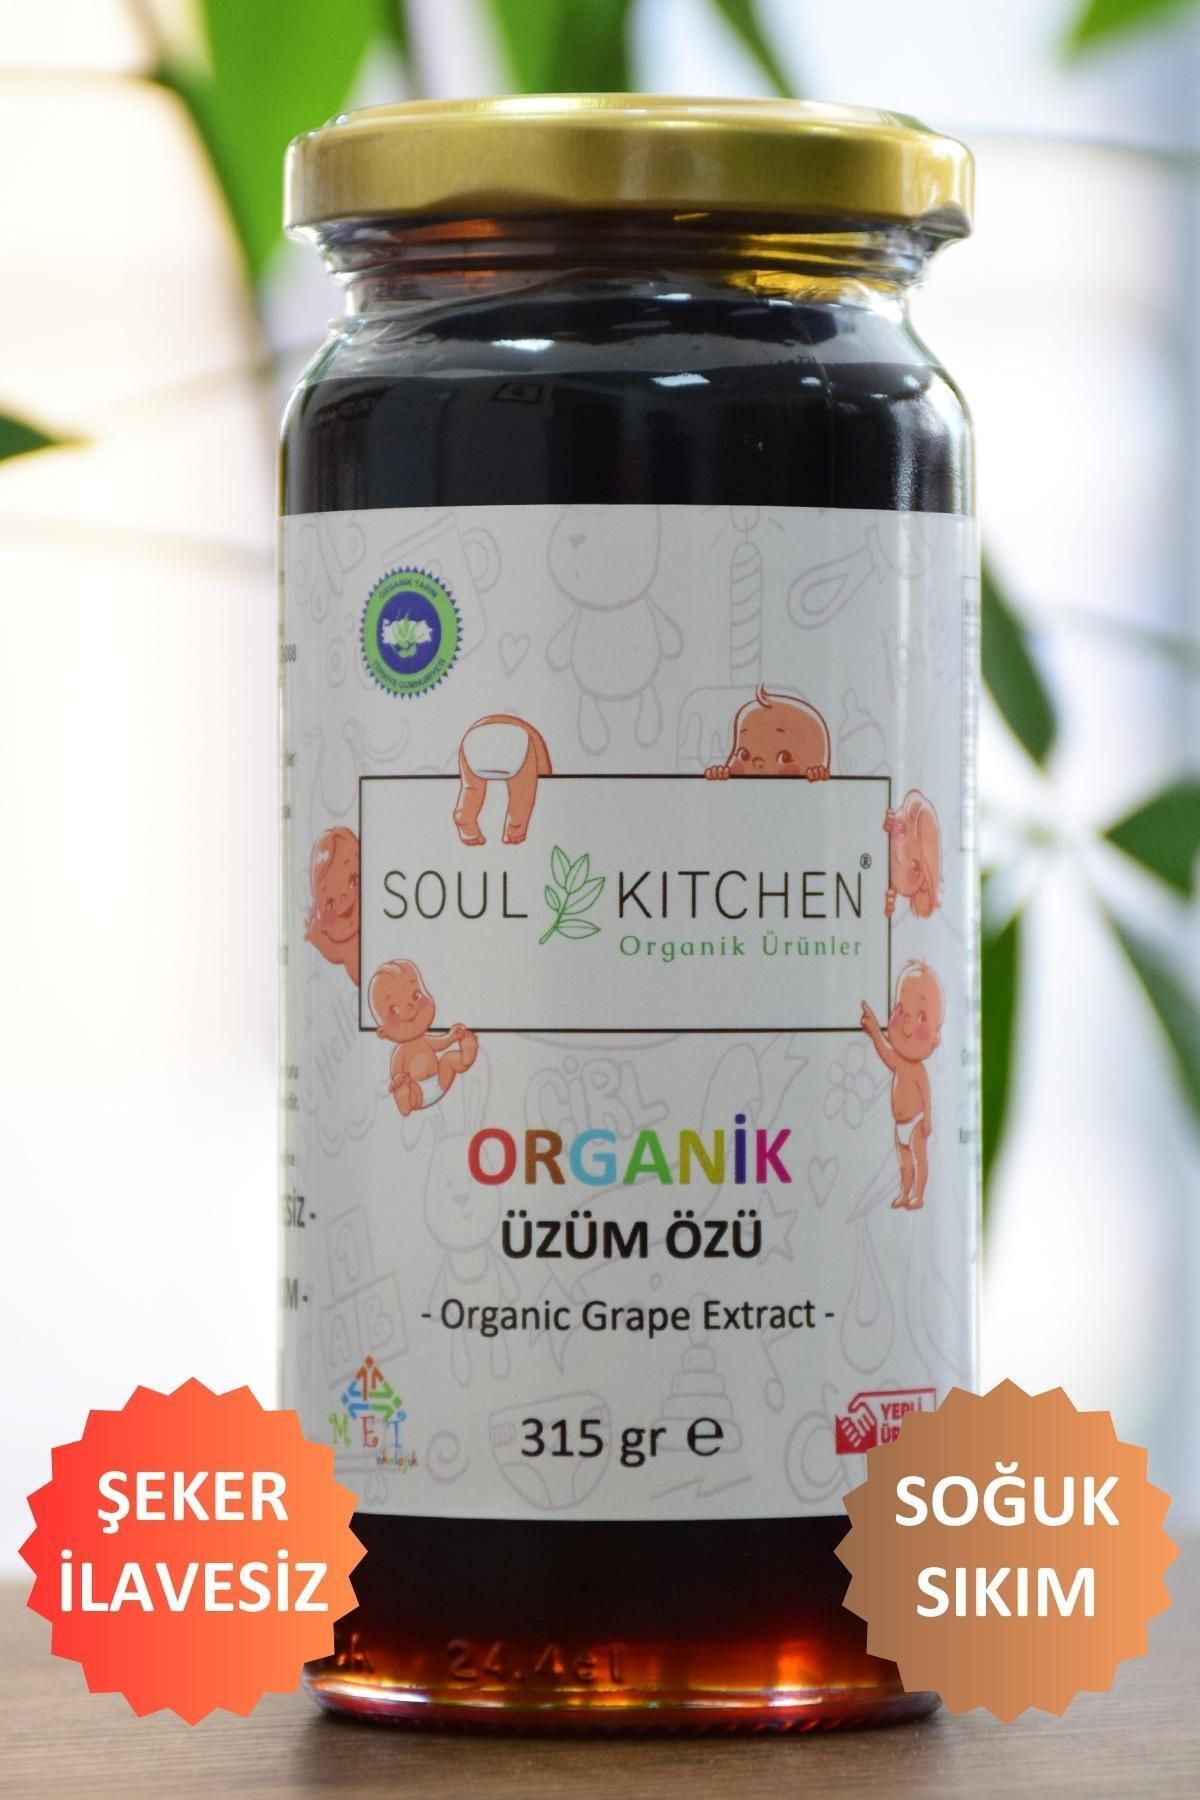 Soul Kitchen Organik Ürünler Organik Bebek Üzüm Özü 315gr (SOĞUK SIKIM) (ŞEKER İLAVESİZ)